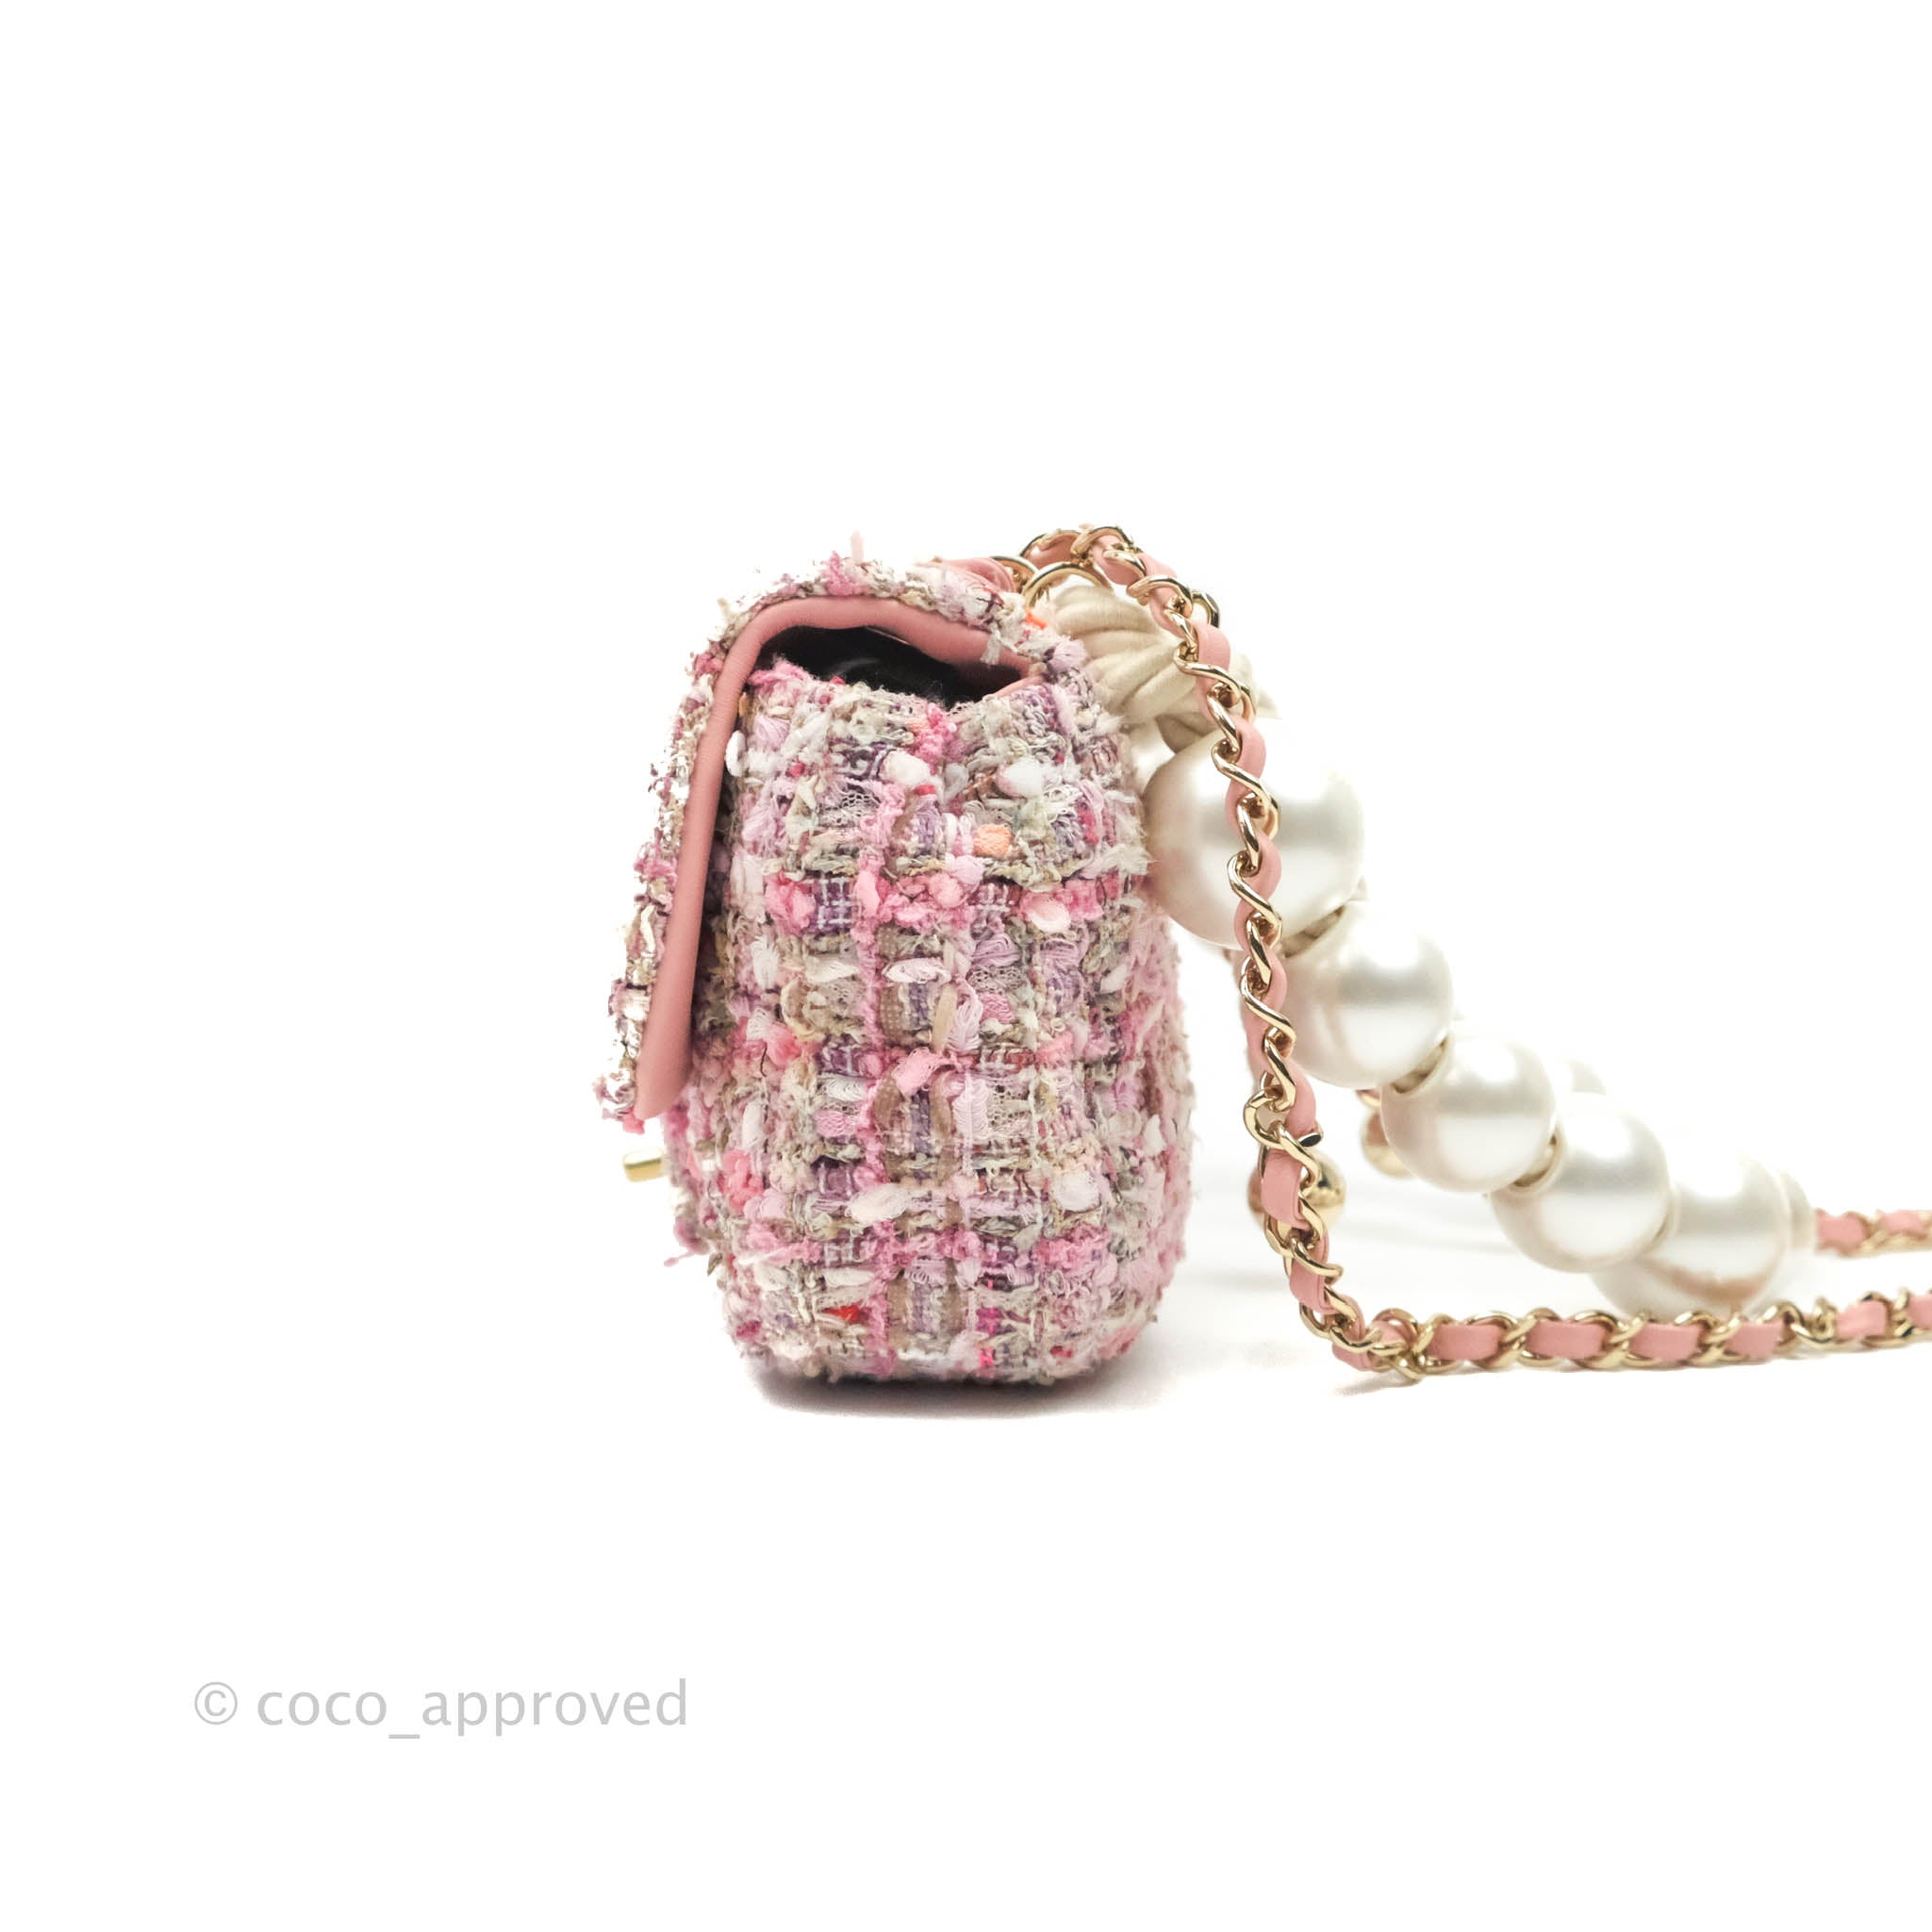 Chanel Large Pearl Handle Bag, Bragmybag